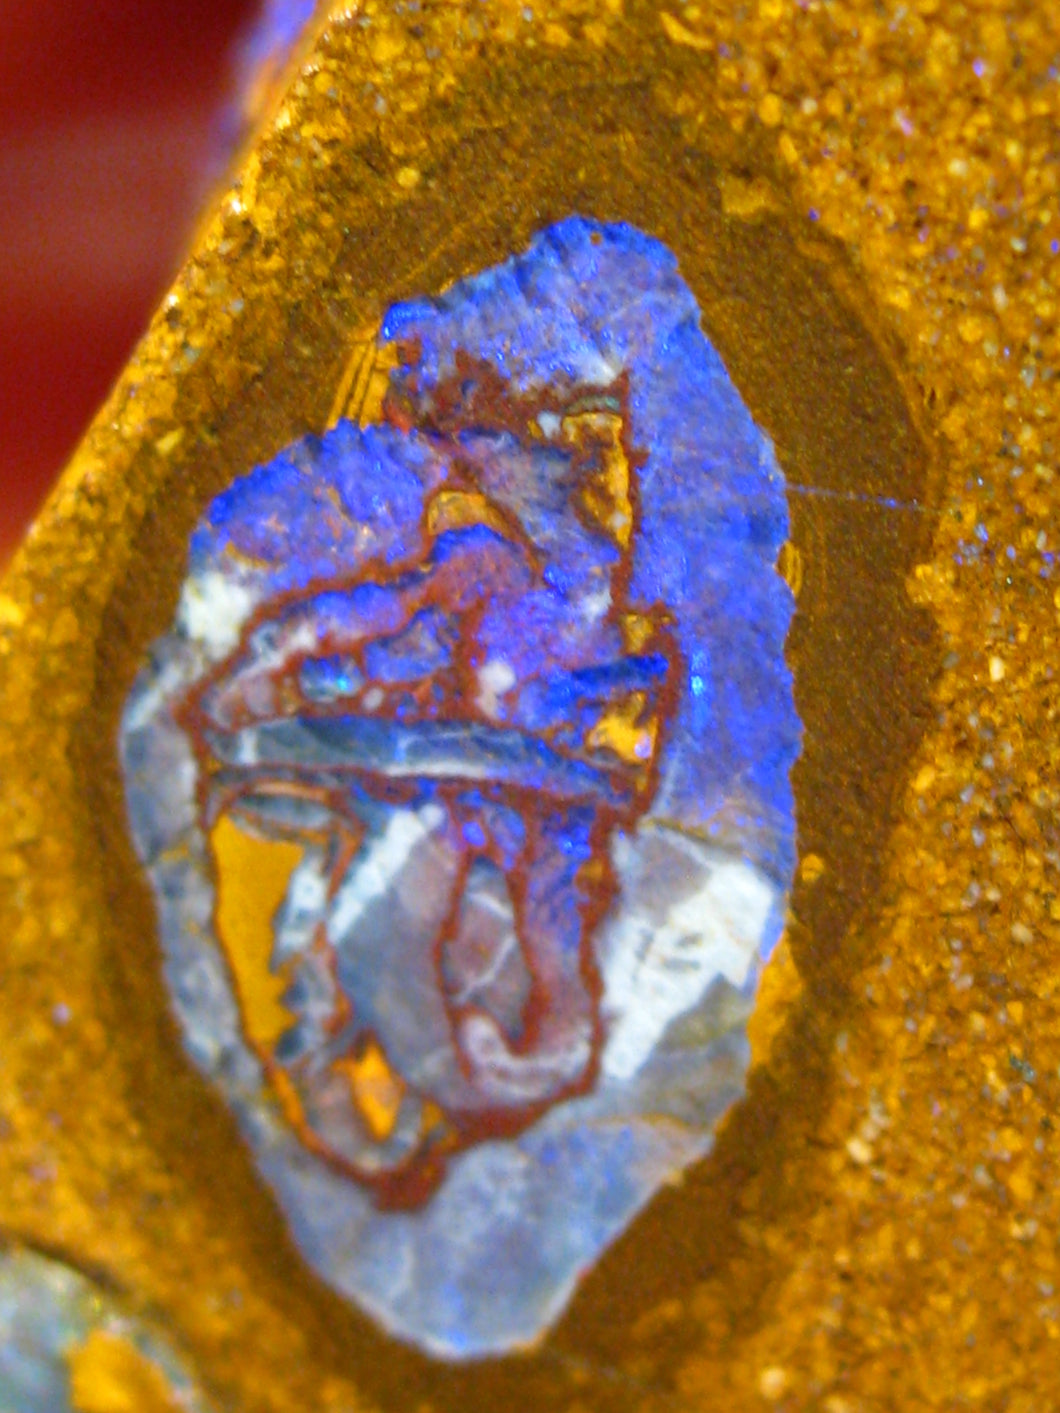 36 cts Australien Roh/rough Yowah NUSS Boulder Matrix Opal Sammler Schleifer